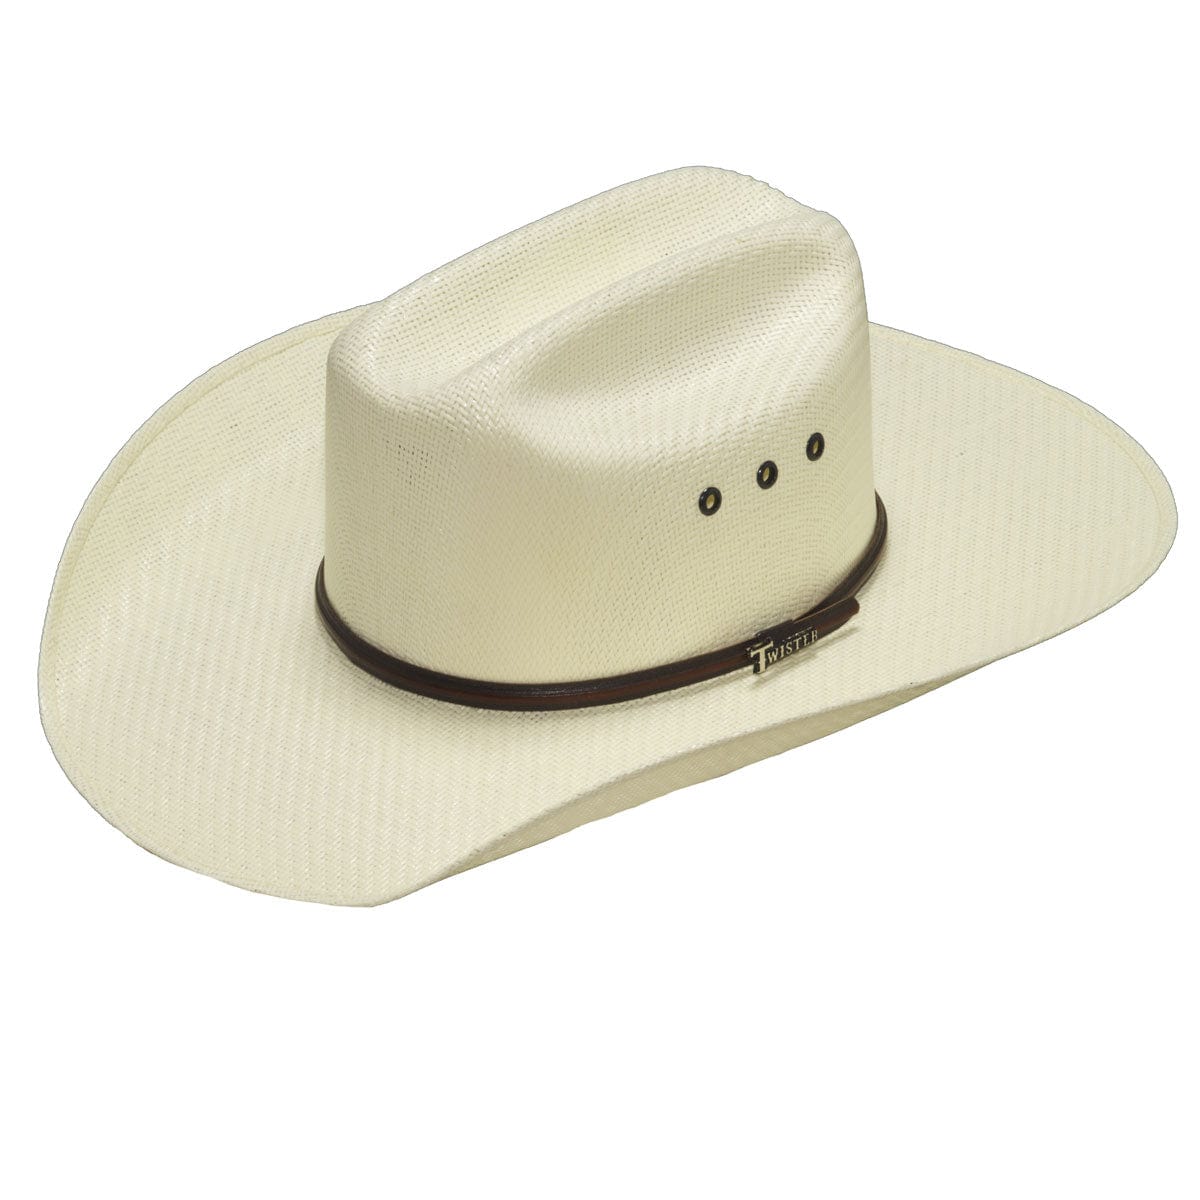 Twister 5X Shantung Straw Cowboy Hat